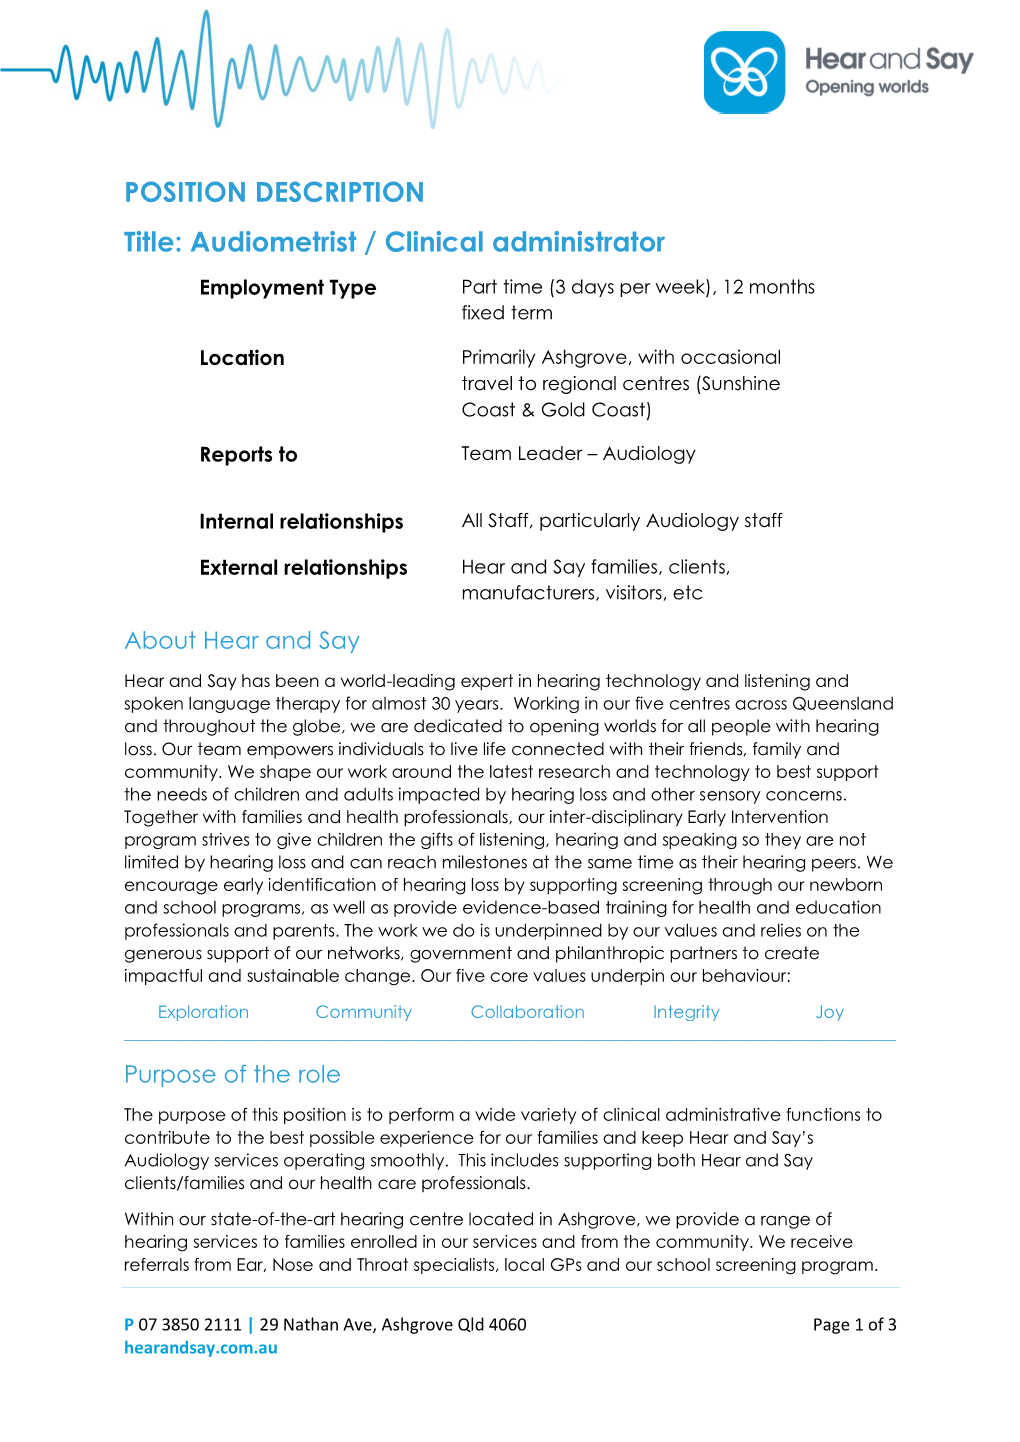 POSITION DESCRIPTION Title: Audiometrist / Clinical Administrator